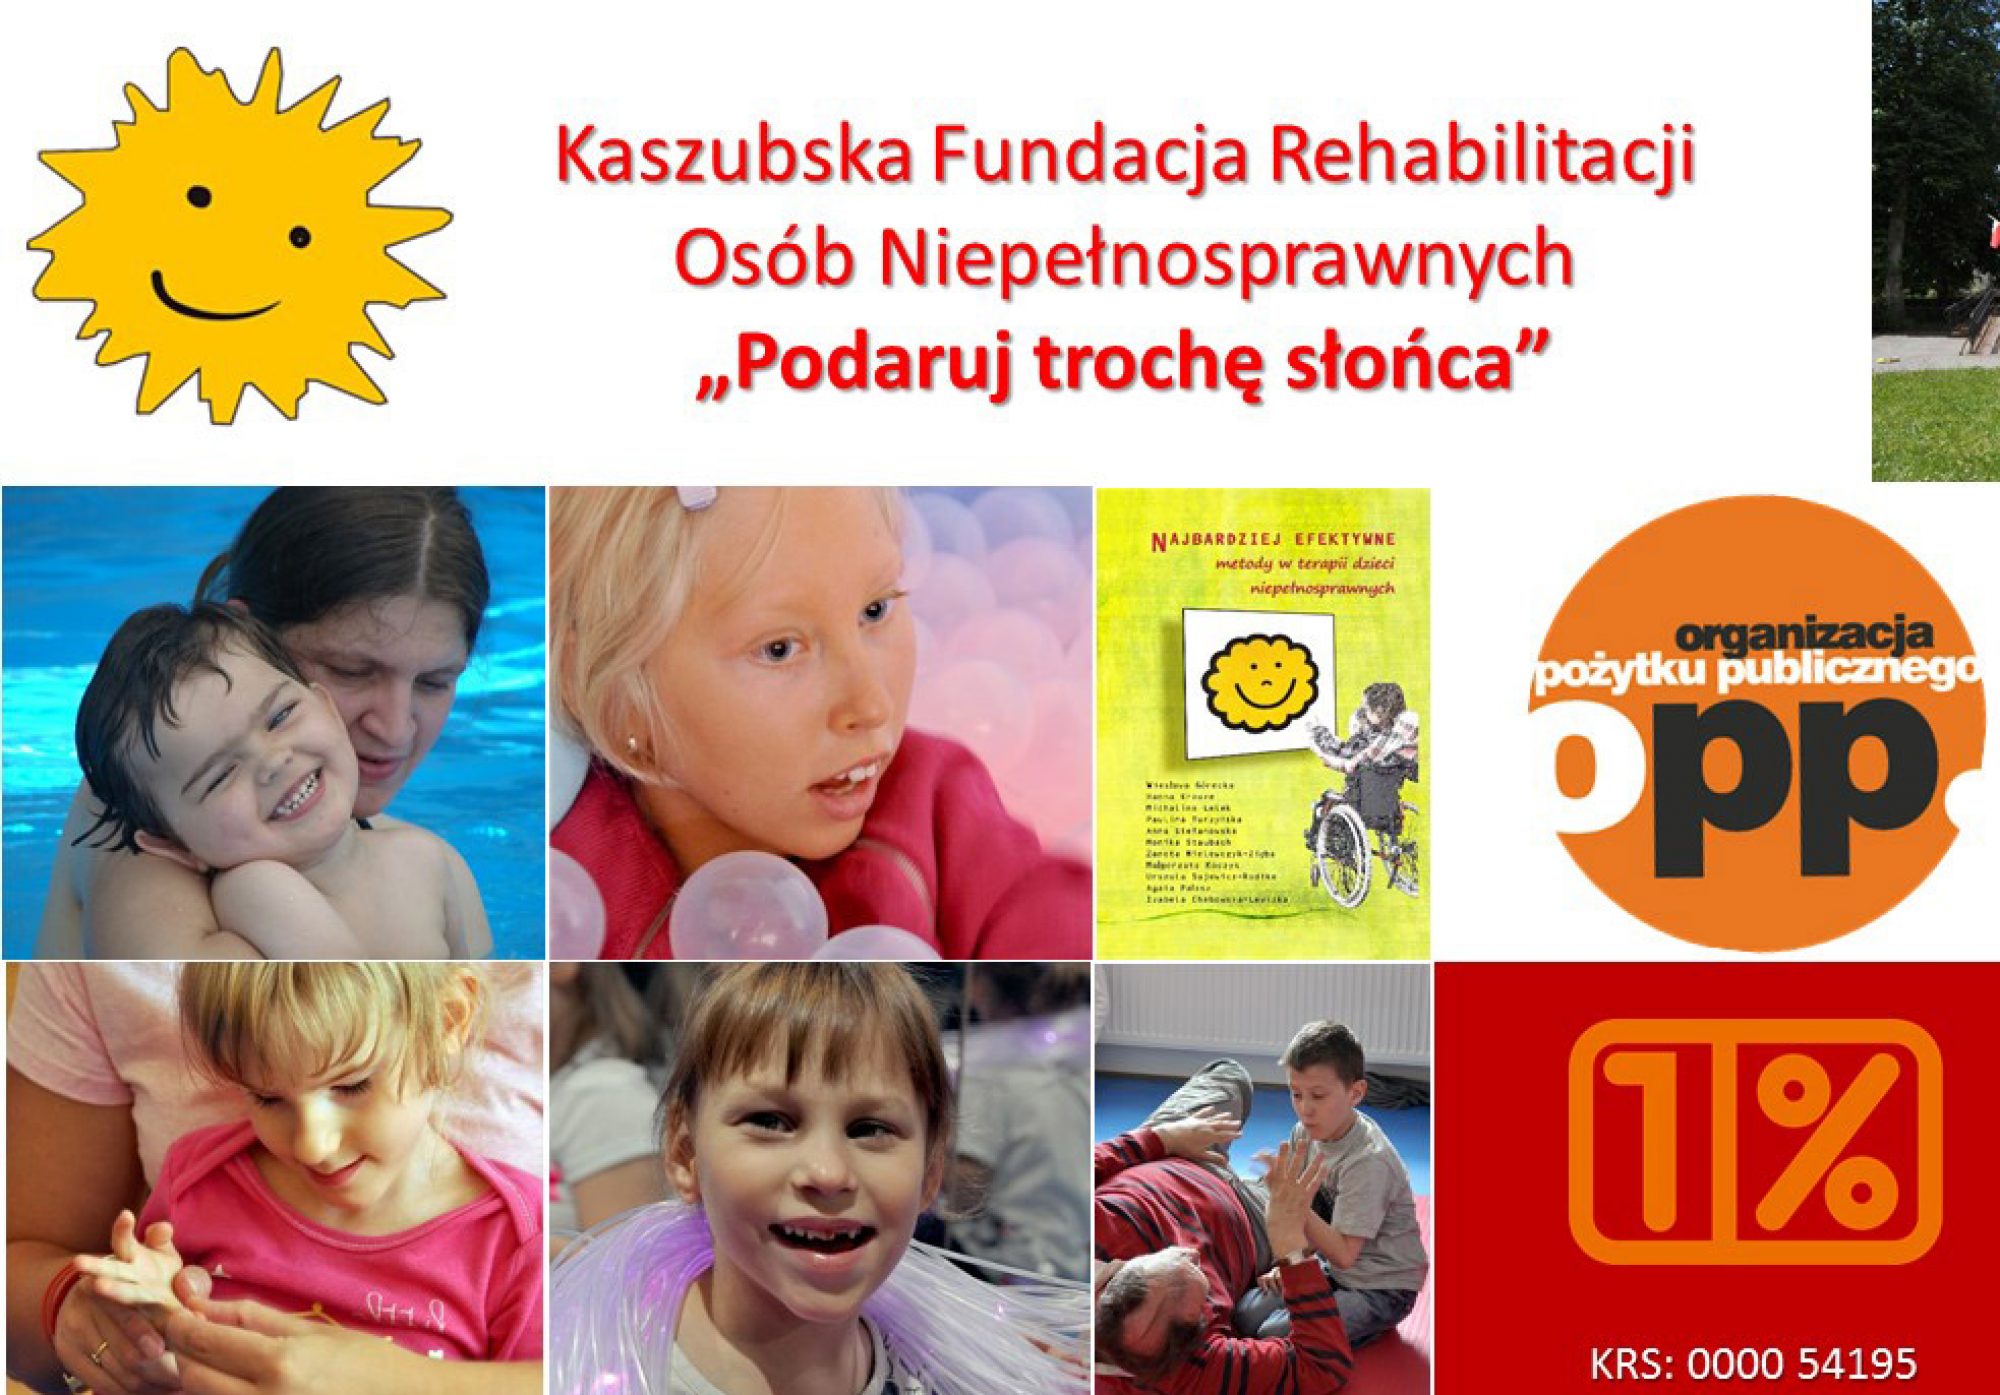 kaszubska fundacja rehabilitacji osób niepełnosprawnych "PODARUJ TROCHĘ SŁOŃCA"  